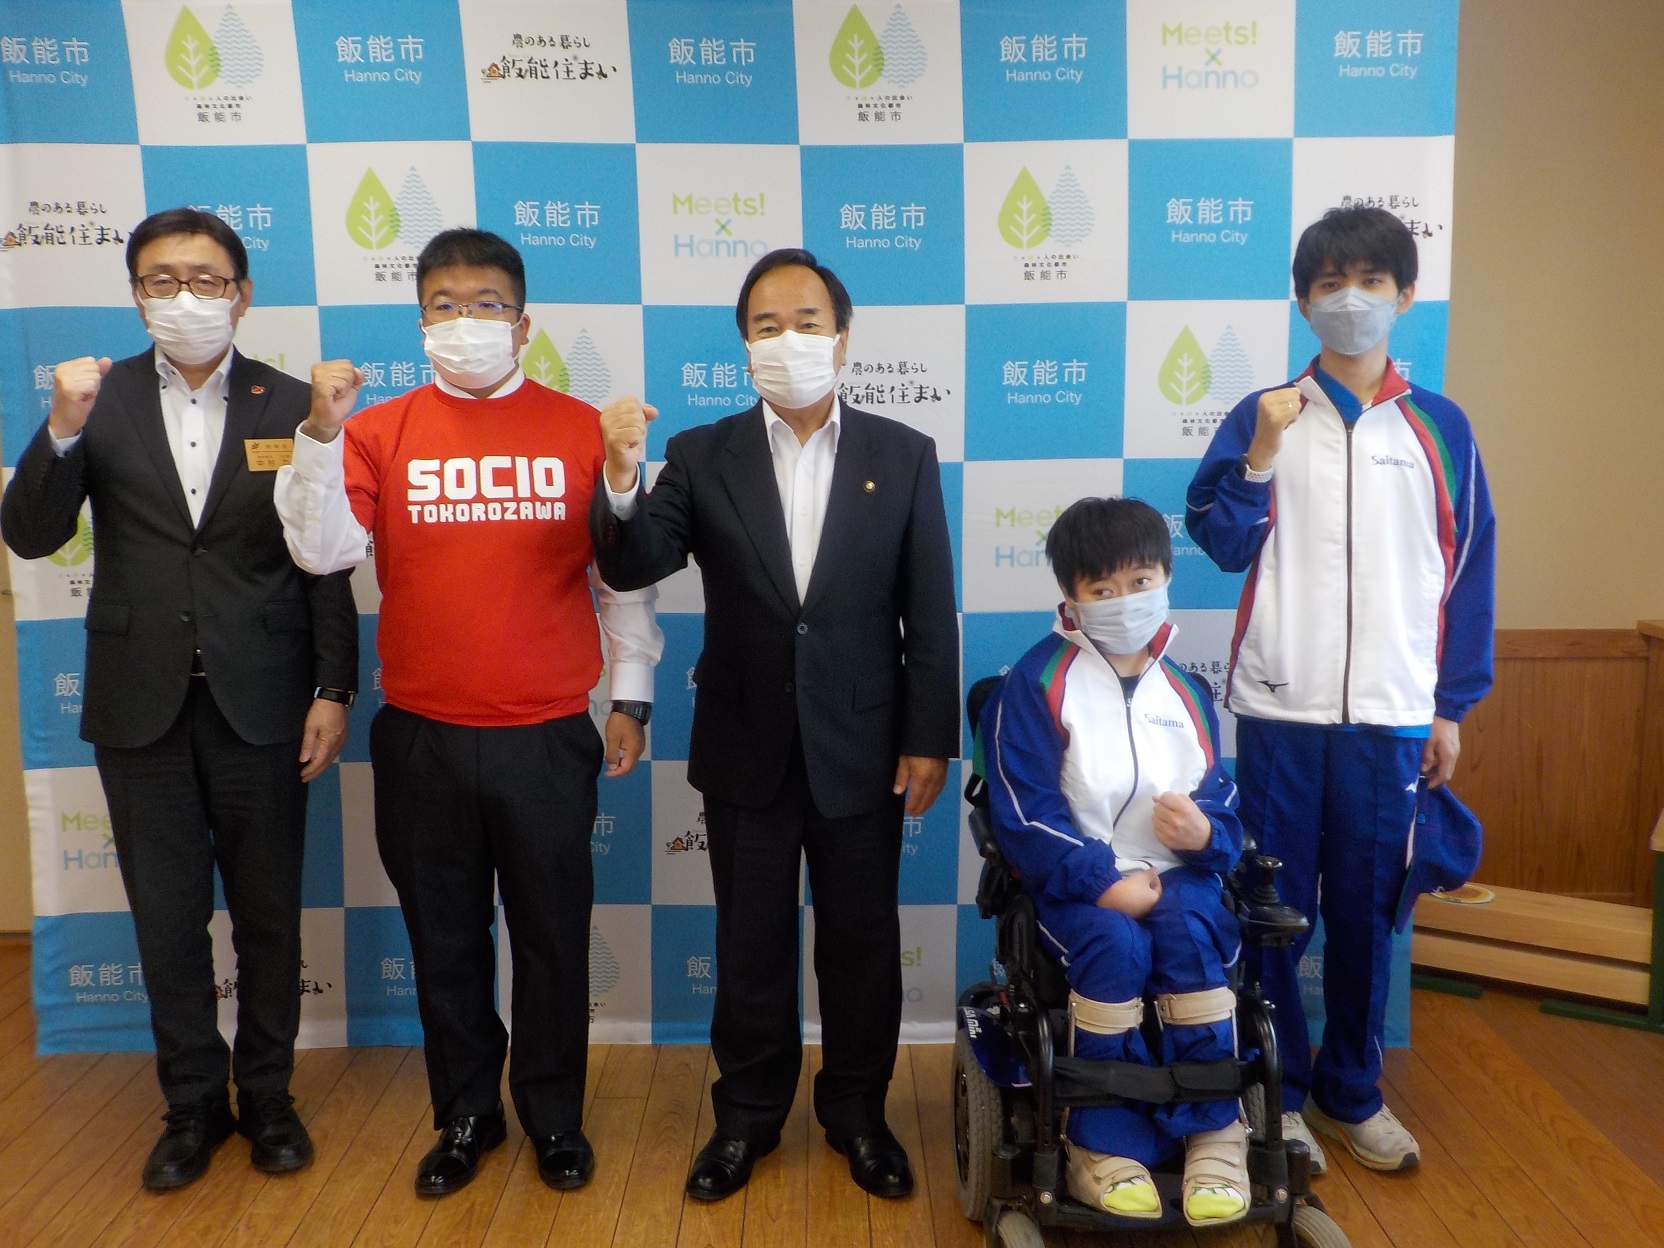 大会出場報告に訪れた小谷野莉沙さん、金野駿さん、澤田武志さんたちとガッツポーズをしている写真